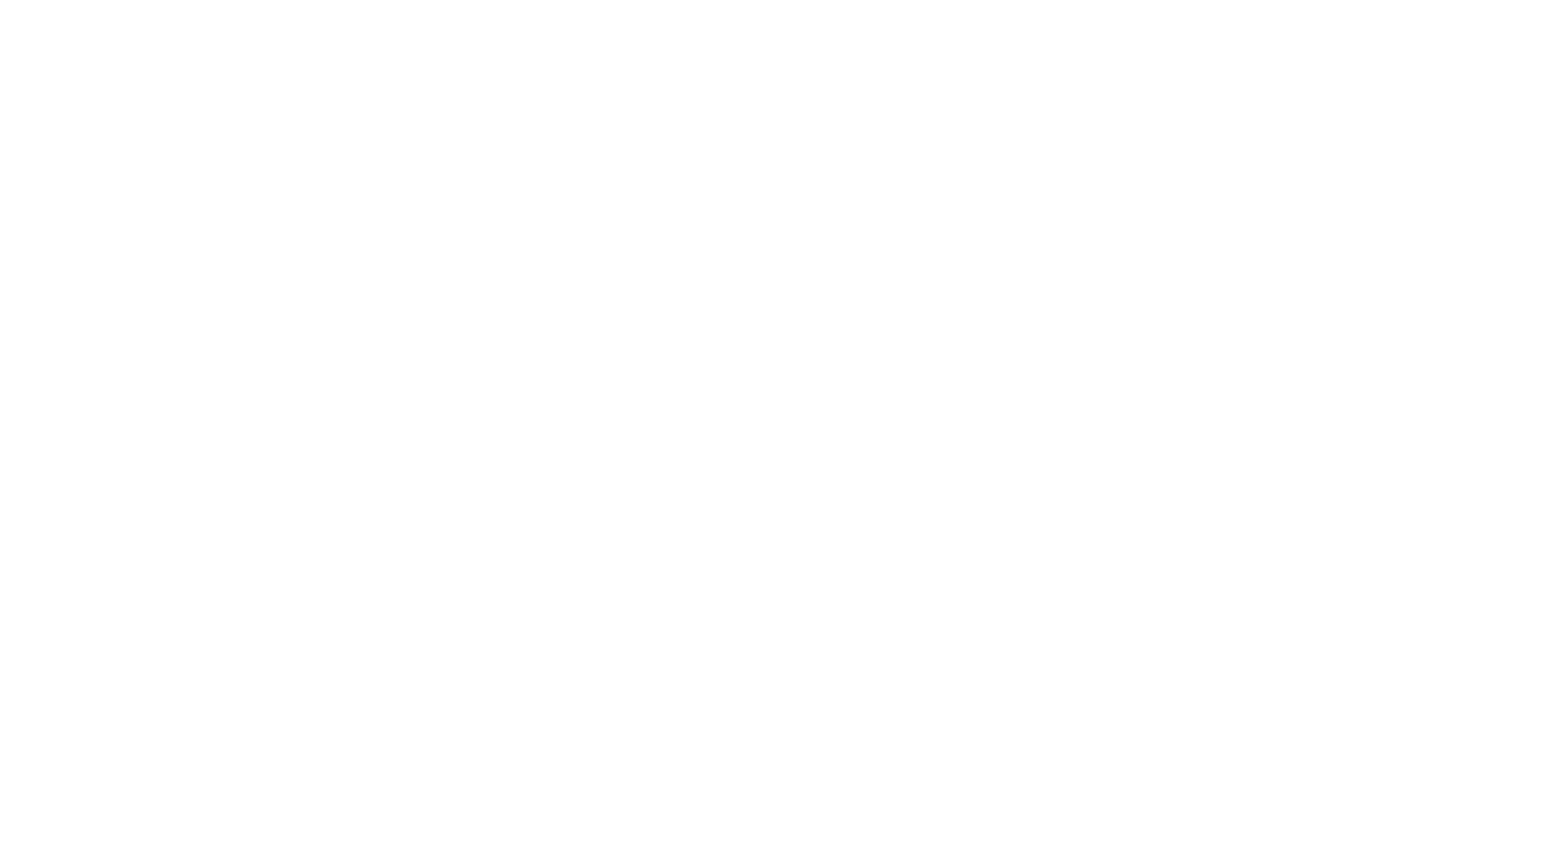 Northrim BanCorp logo for dark backgrounds (transparent PNG)